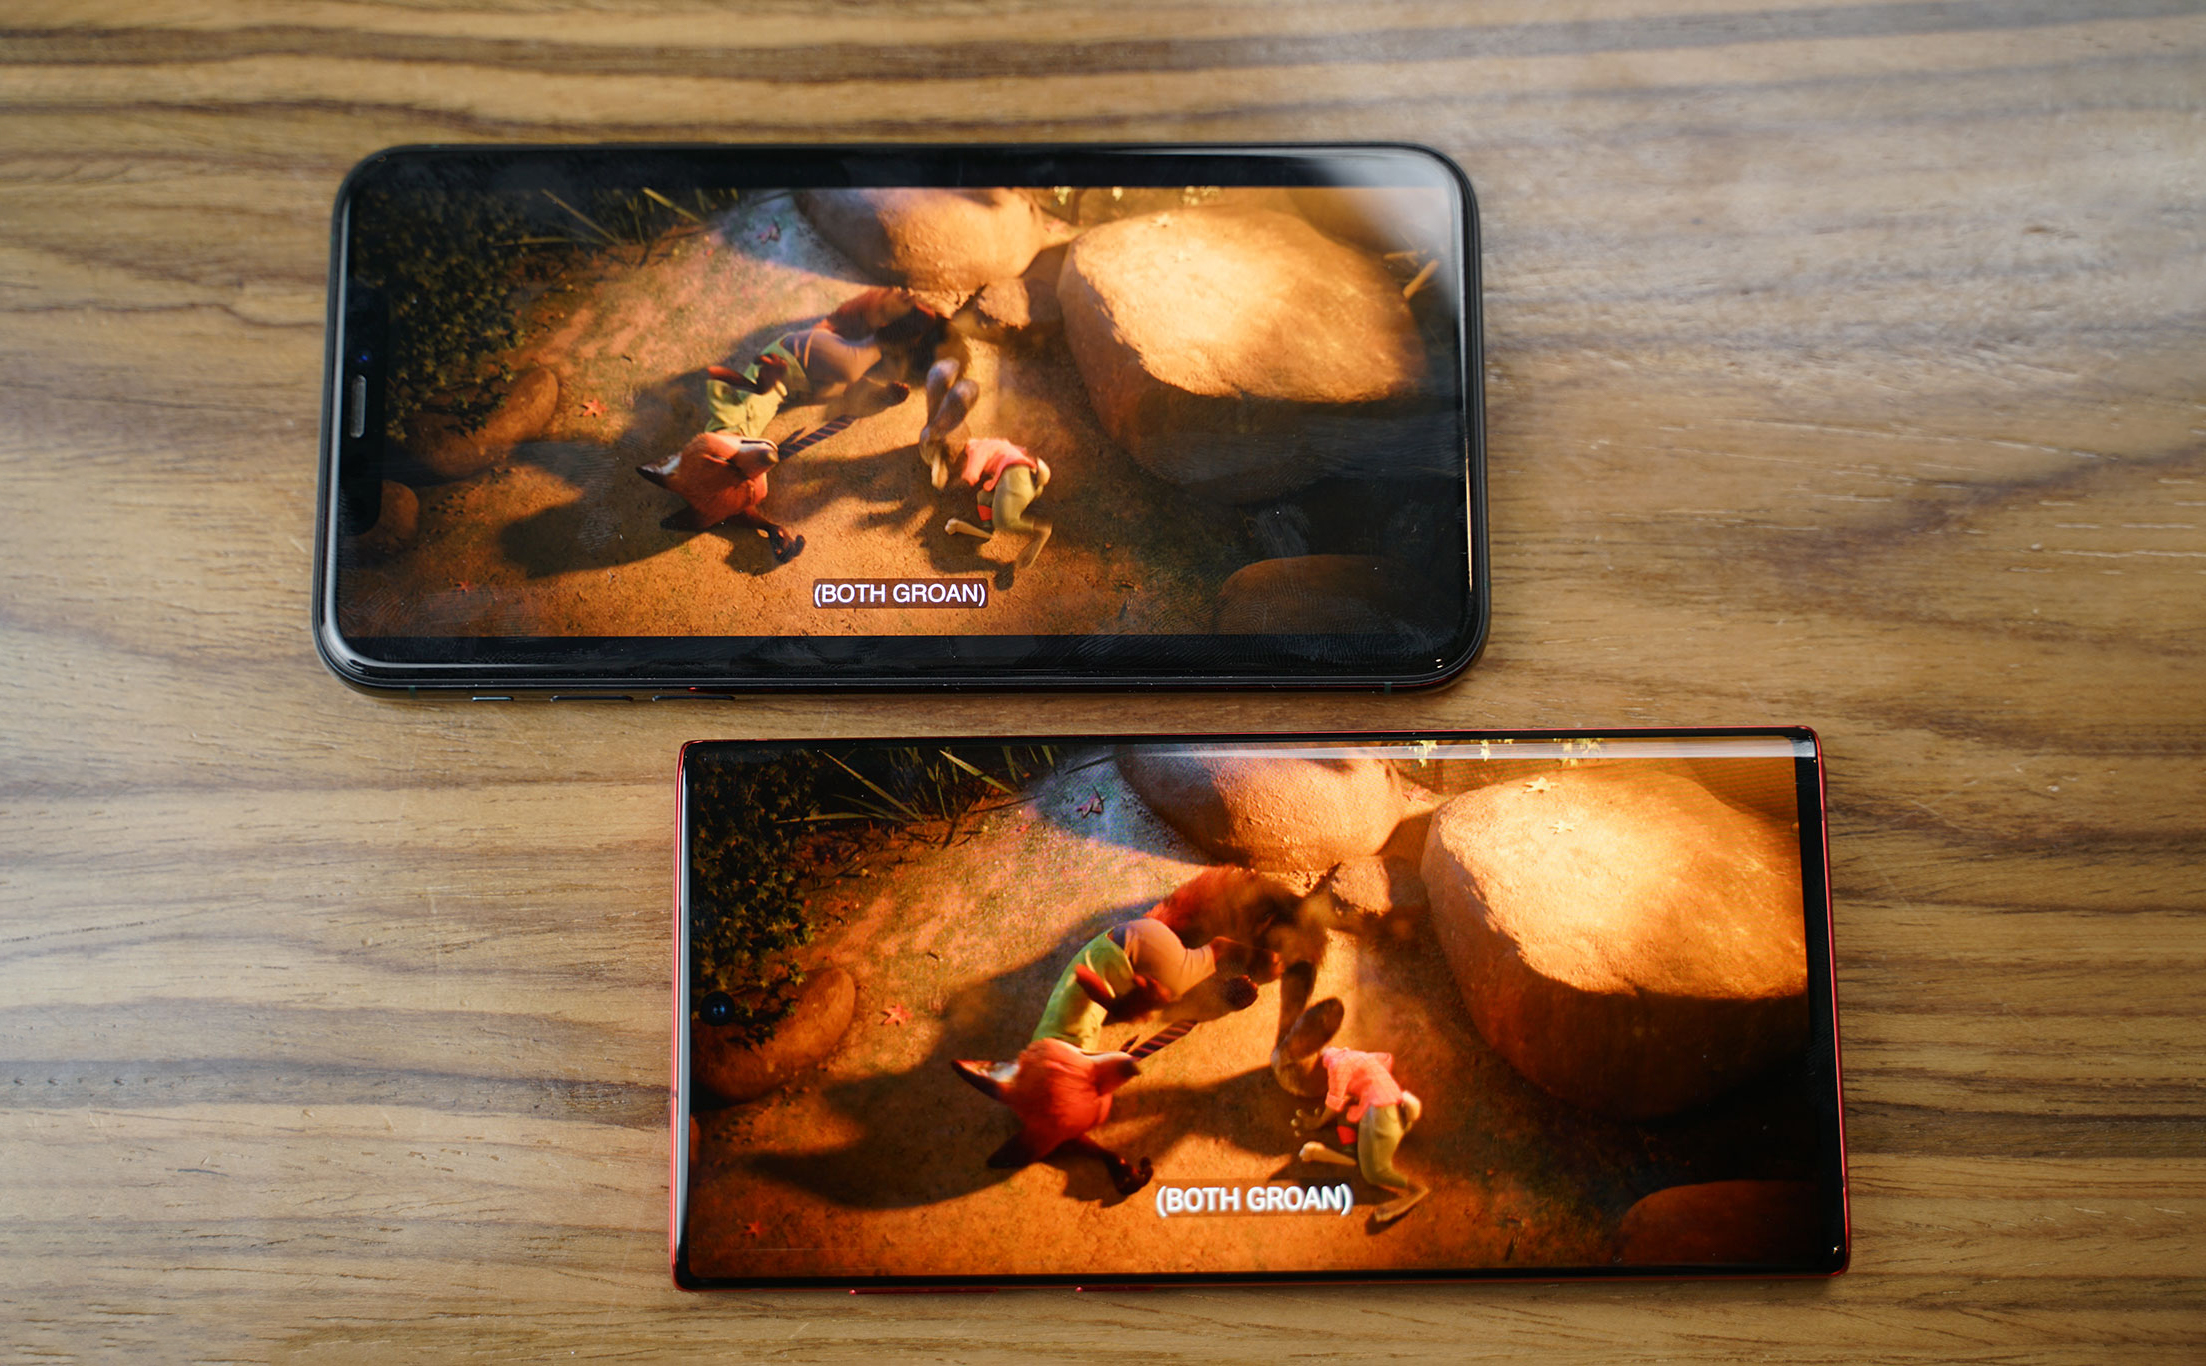 Trải nghiệm giải trí trên Samsung Galaxy Note 10: màn cong rất đẹp, nhưng vướng!